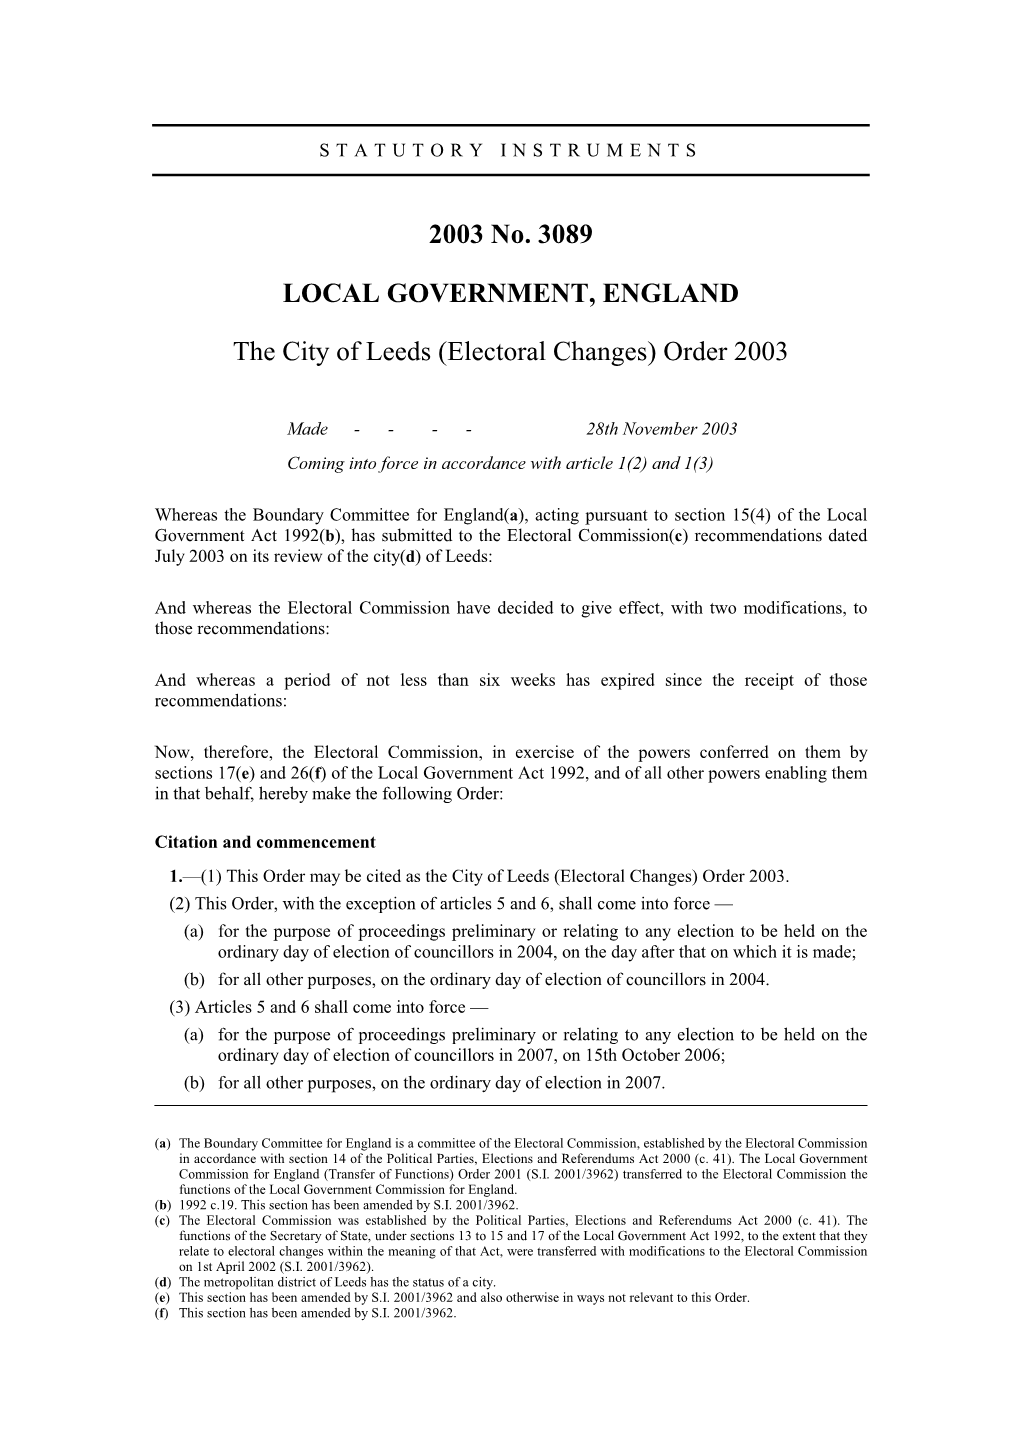 Electoral Changes) Order 2003